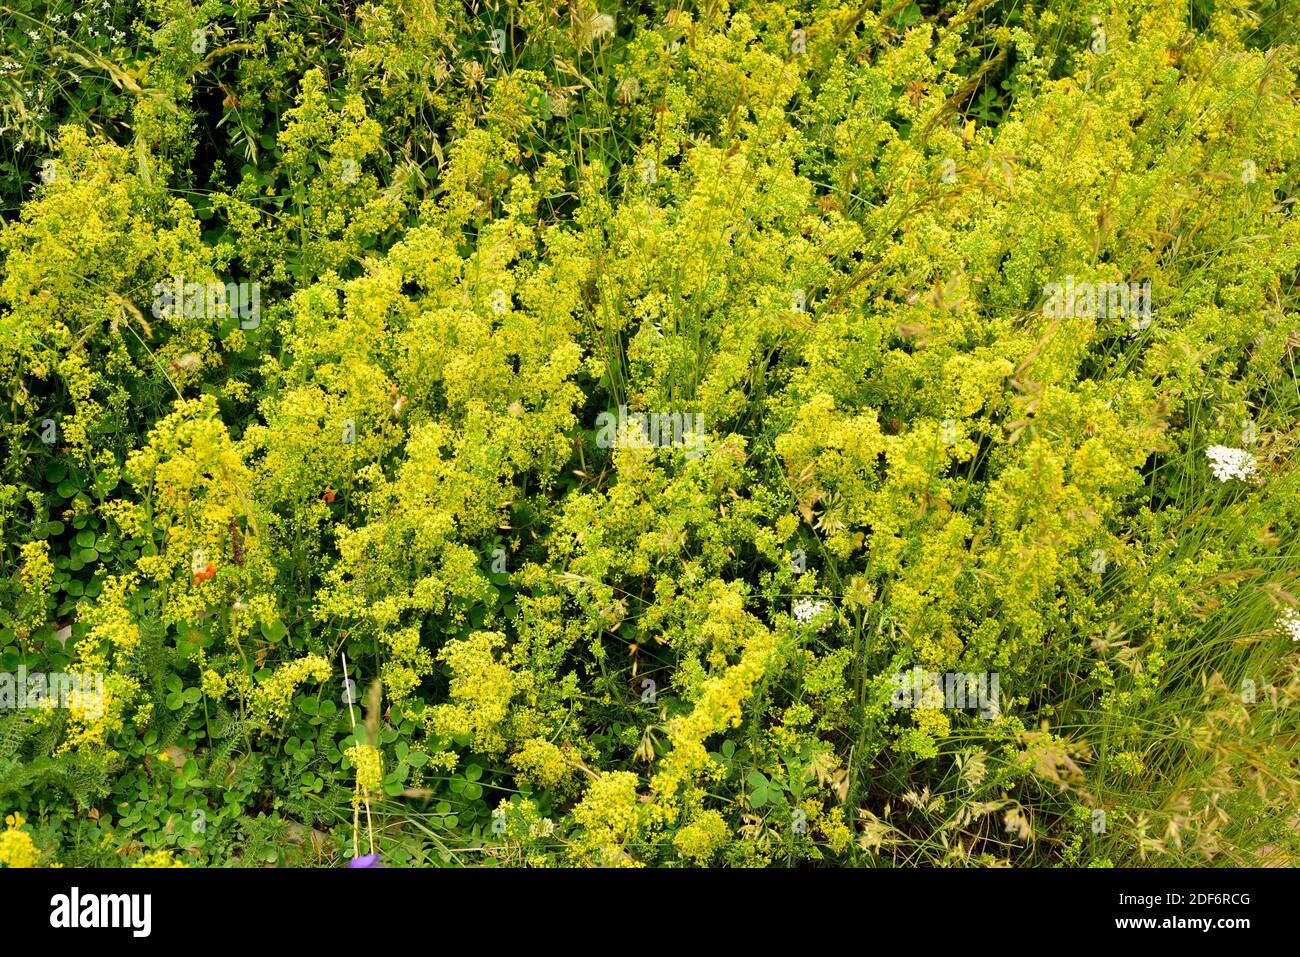 Lady bedpaglia o giallo paglierino (Galium verum) è un'erba perenne  originaria dell'Europa, del Nord Africa e dell'Asia. I suoi fiori sono  stati usati per coagulare il latte Foto stock - Alamy